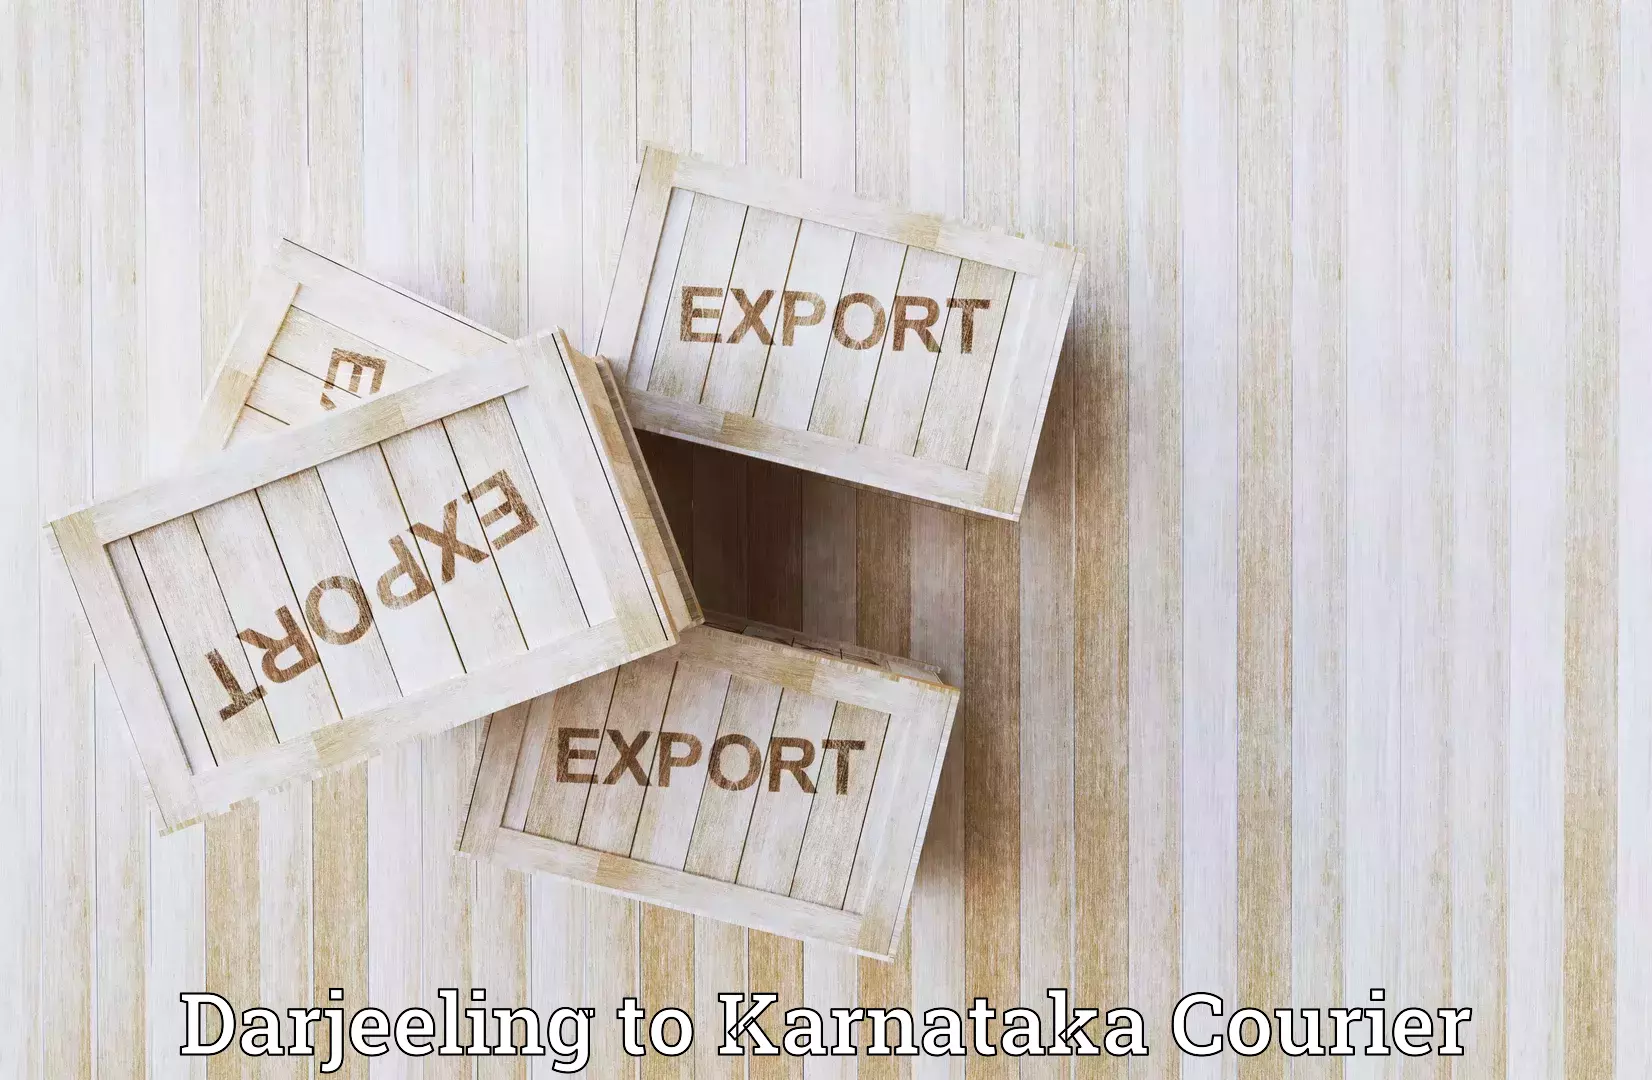 Innovative logistics solutions Darjeeling to Karnataka